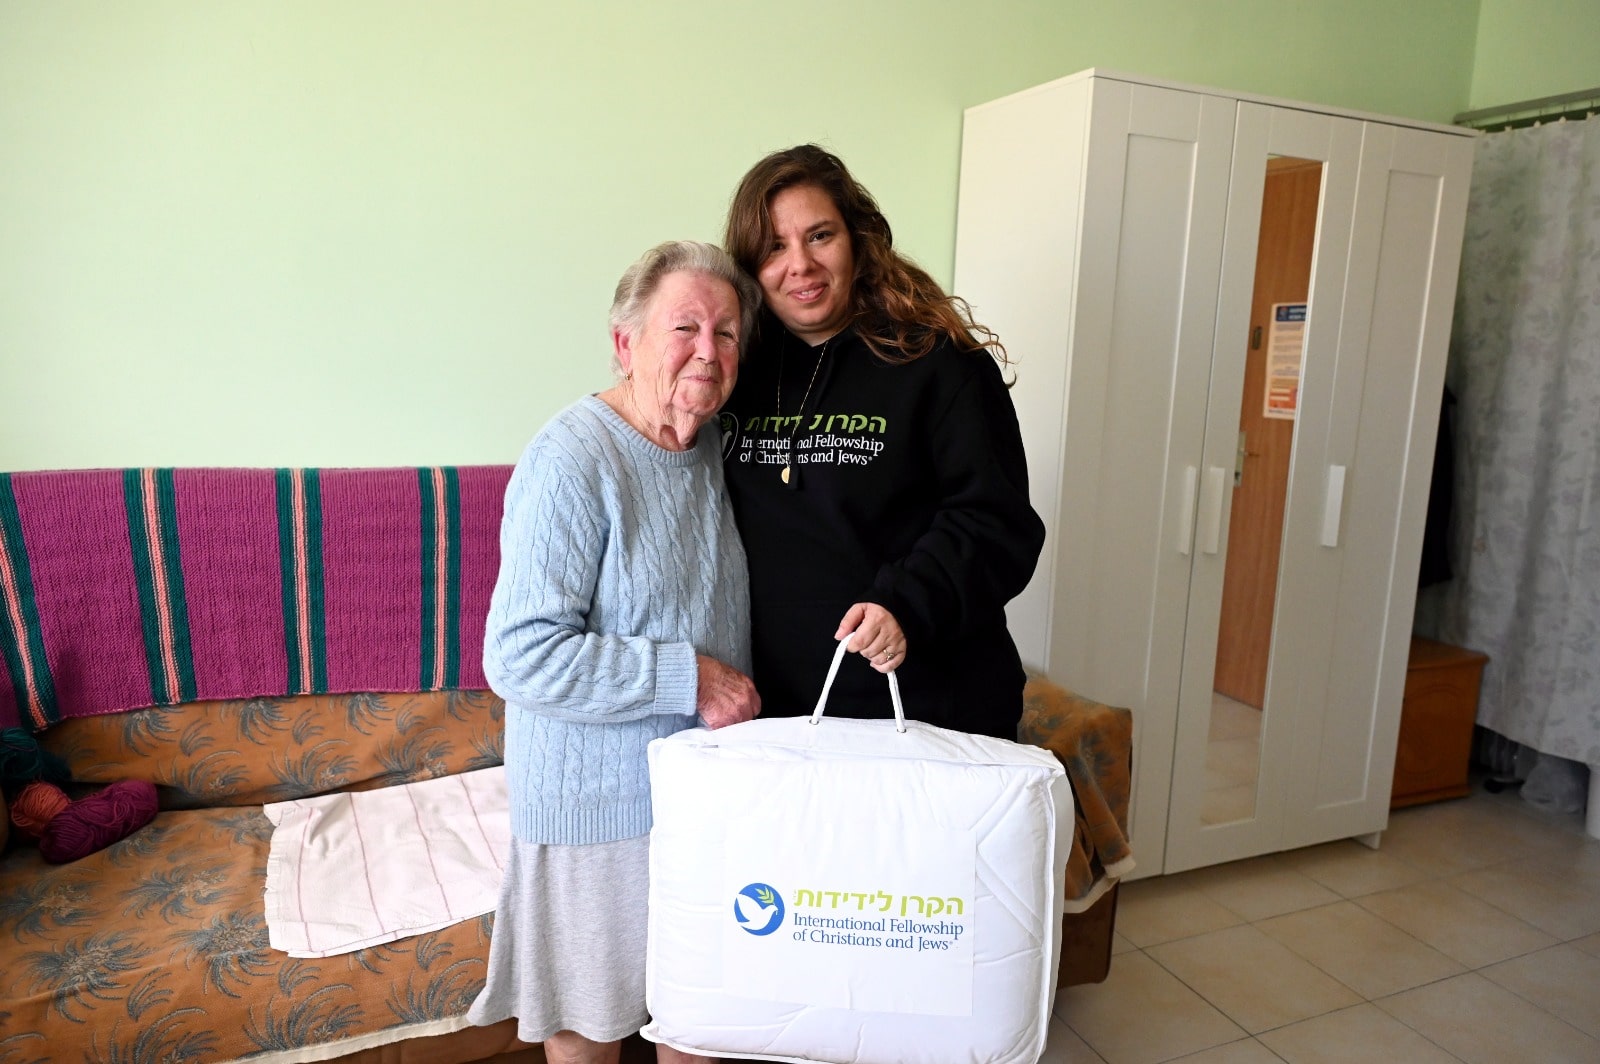 אספיר (אסתר) גנדלמן מקבלת חבילה מעובדת סיוע של הקרן לידידות בקישינב, מולדובה, מרץ 2022 (צילום: באדיבות הקרן לידידות)